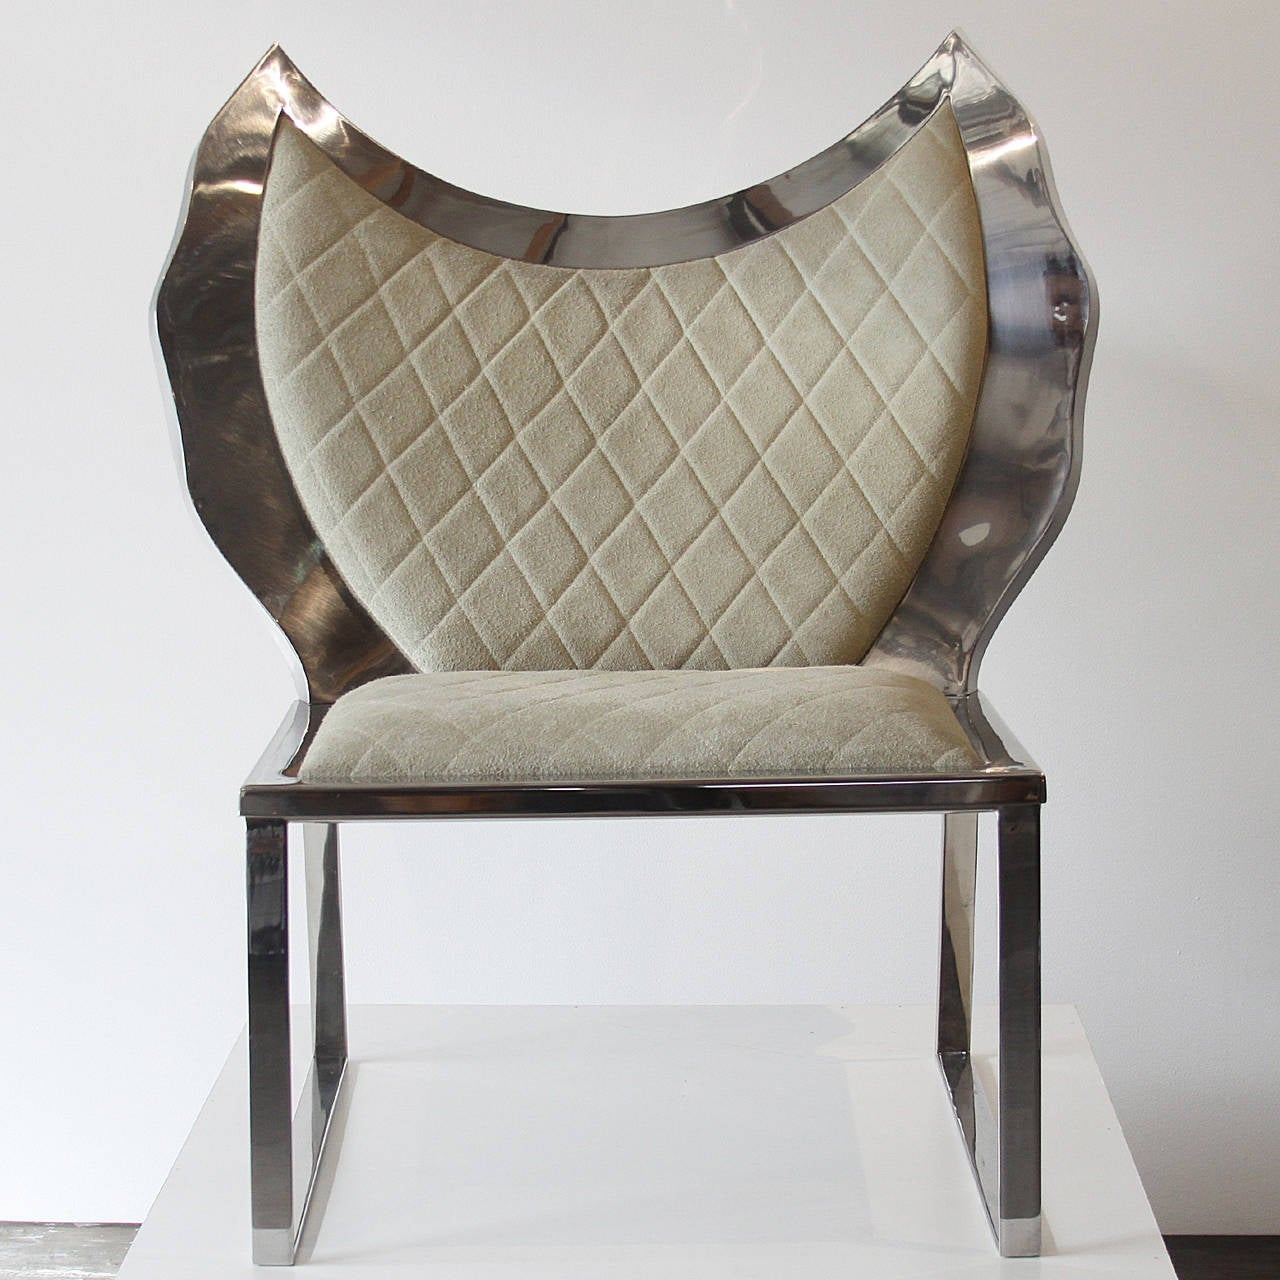 Brazilian Cadeira Anjo Inox Estofada/ Angel Chair Inox Overstuffed by Alê Jordão For Sale